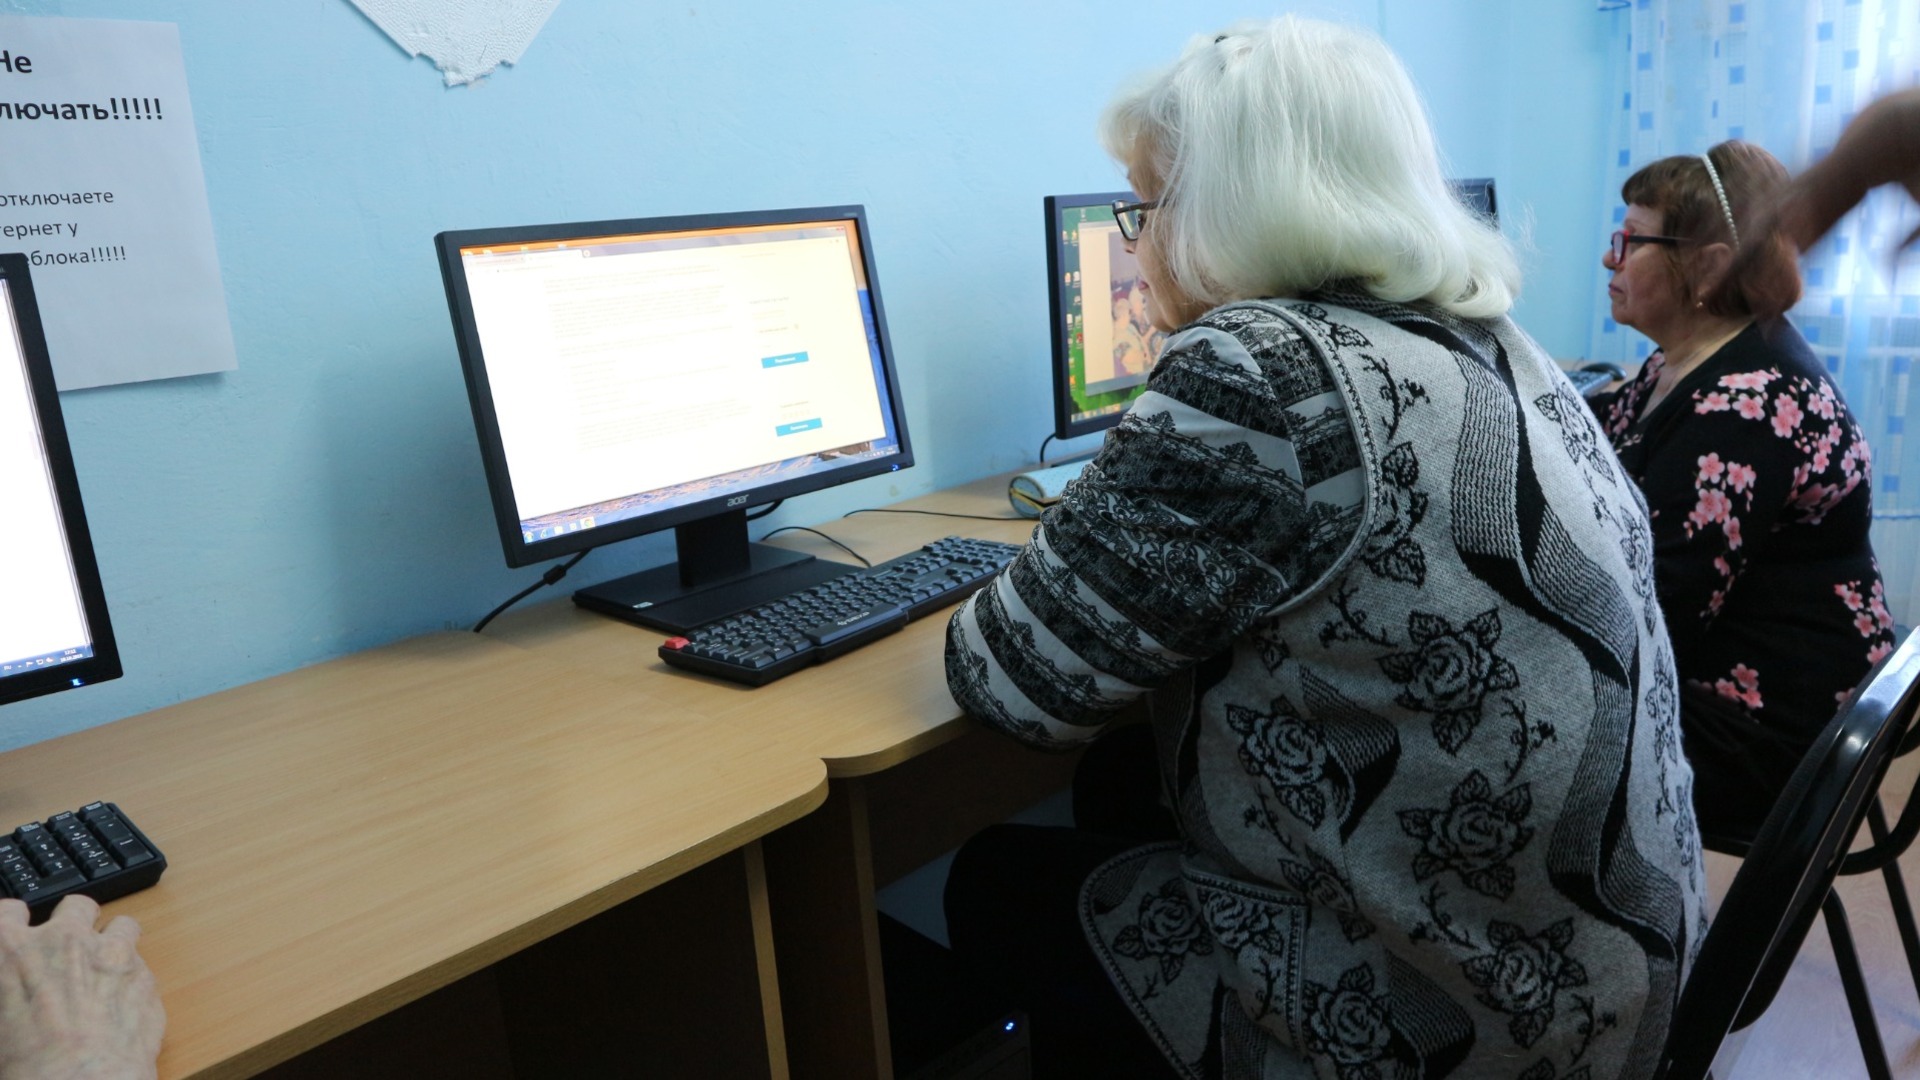 Россияне бьют тревогу из-за начисления пенсии с помощью ИИ. Есть повод для паники?